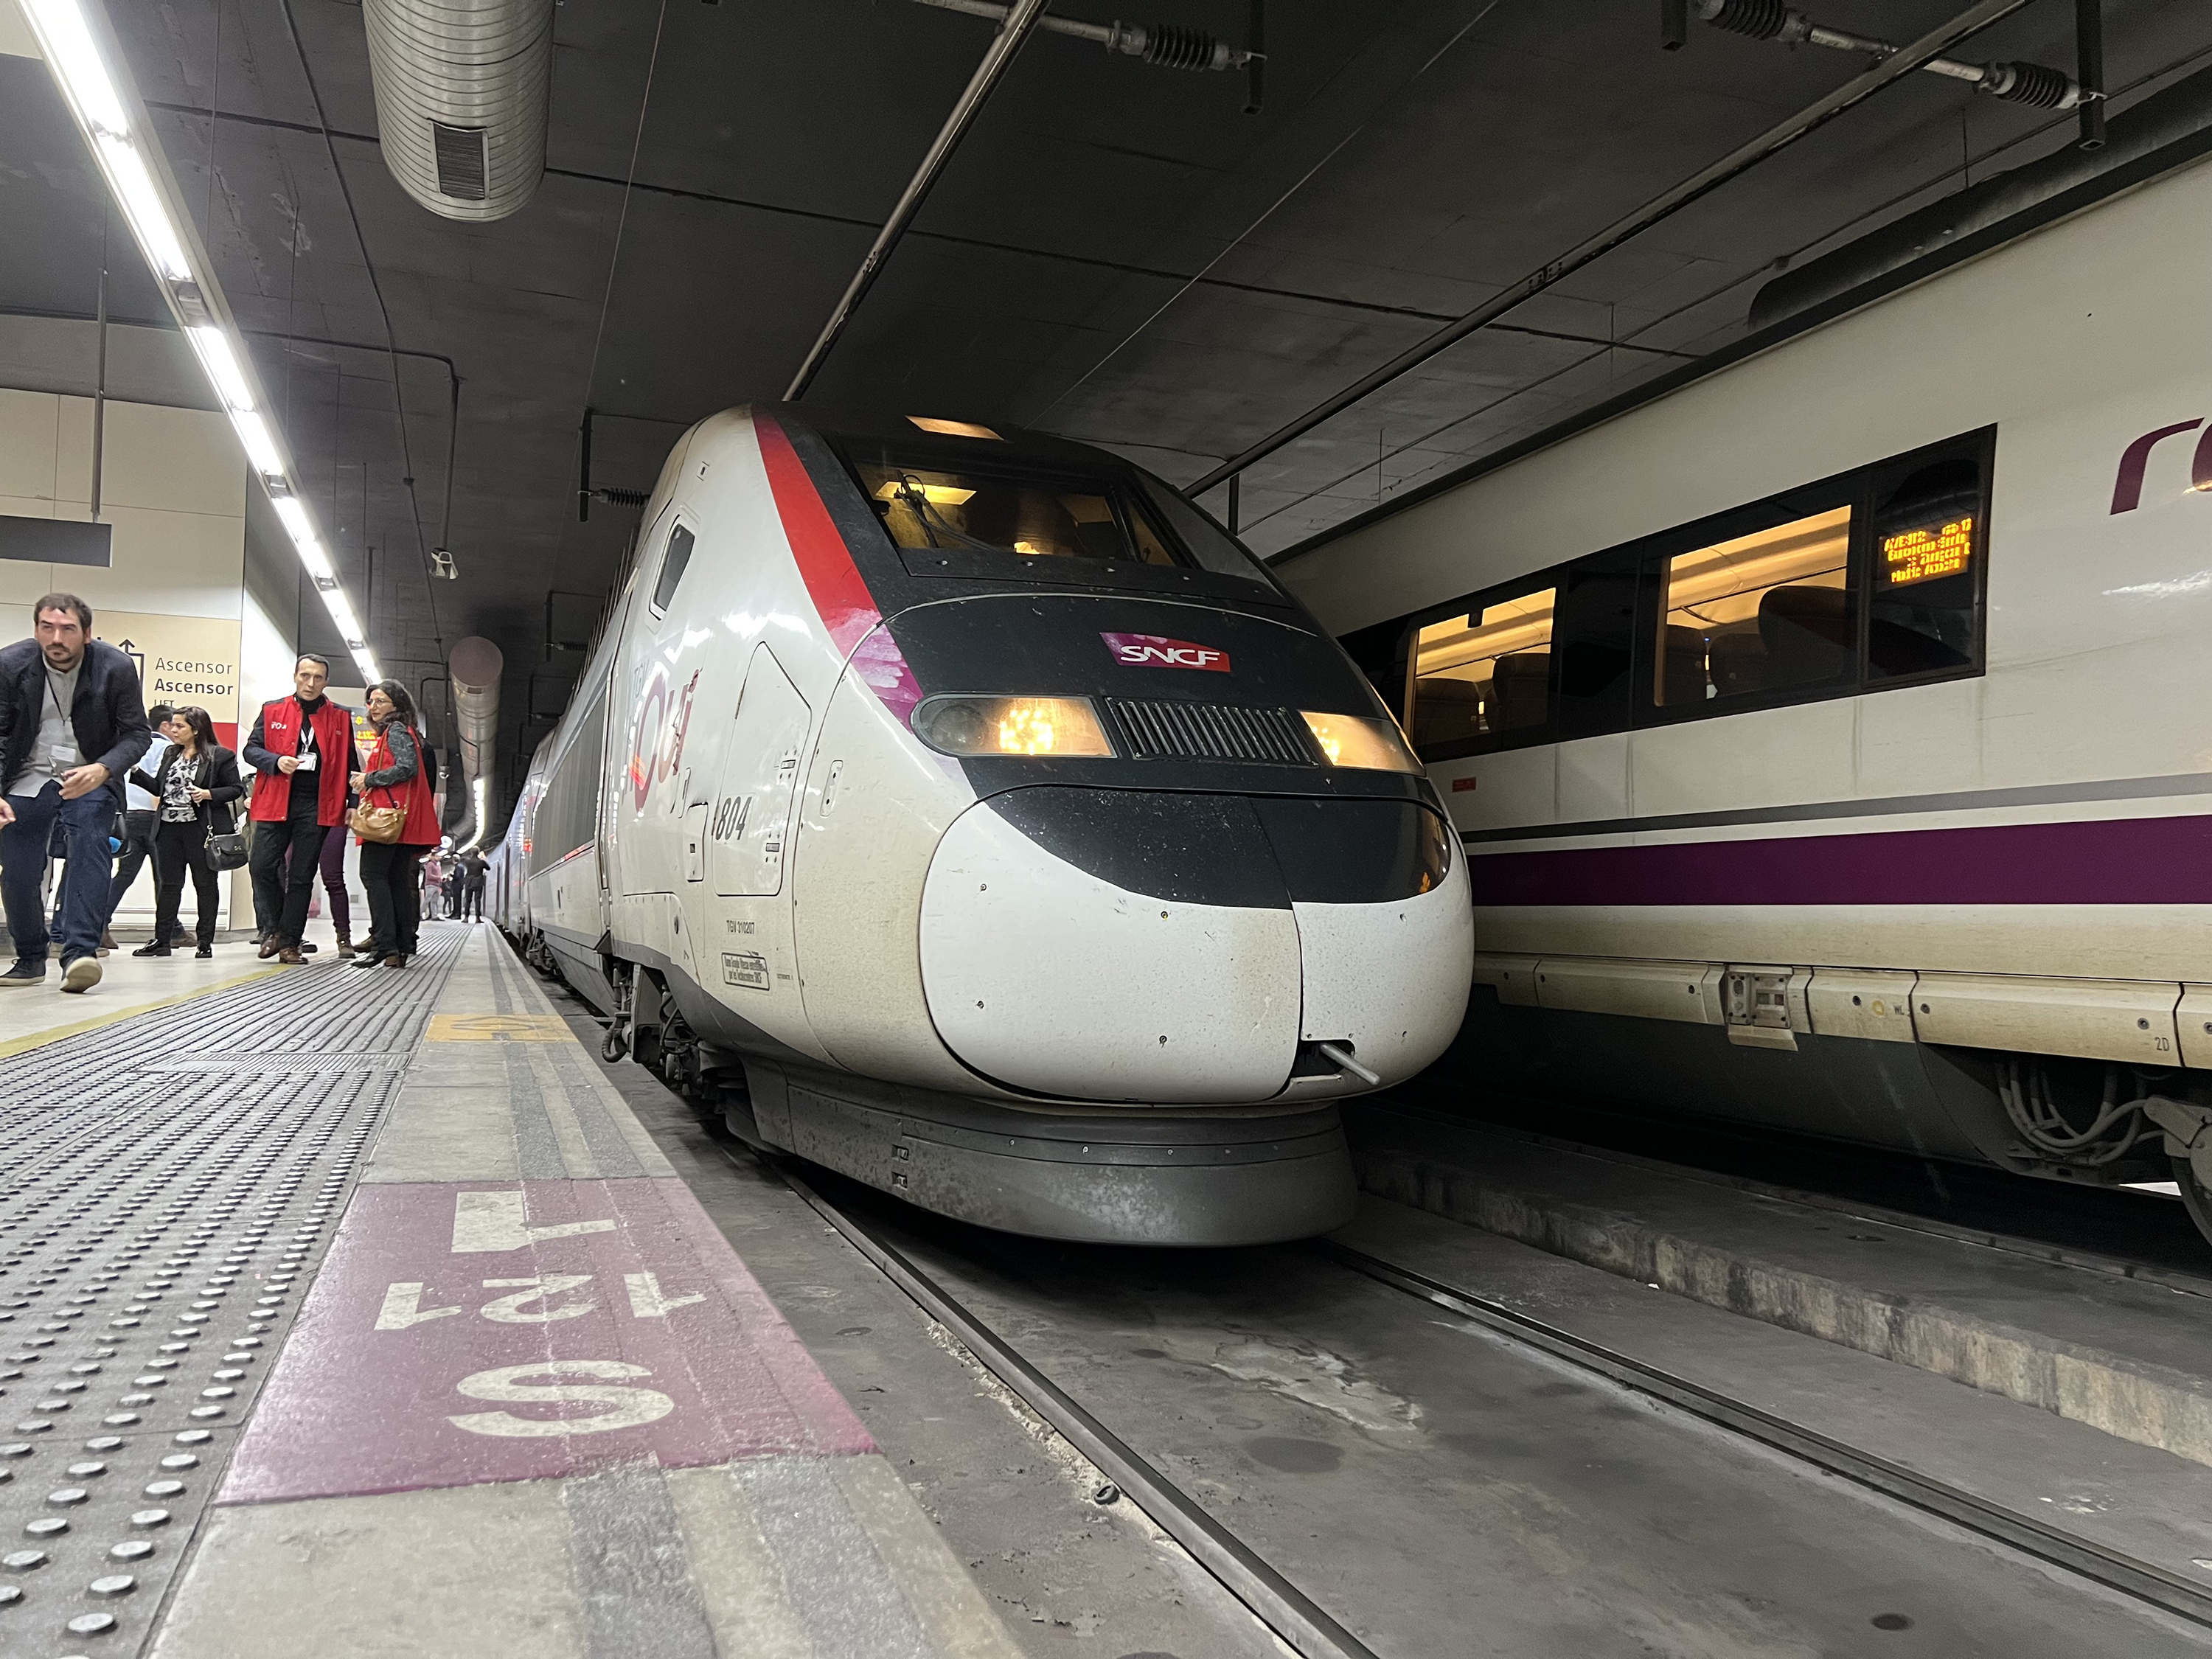 إعادة فتح محطة قطارات في برشلونة بعد إغلاق نتيجة إنذار كاذب